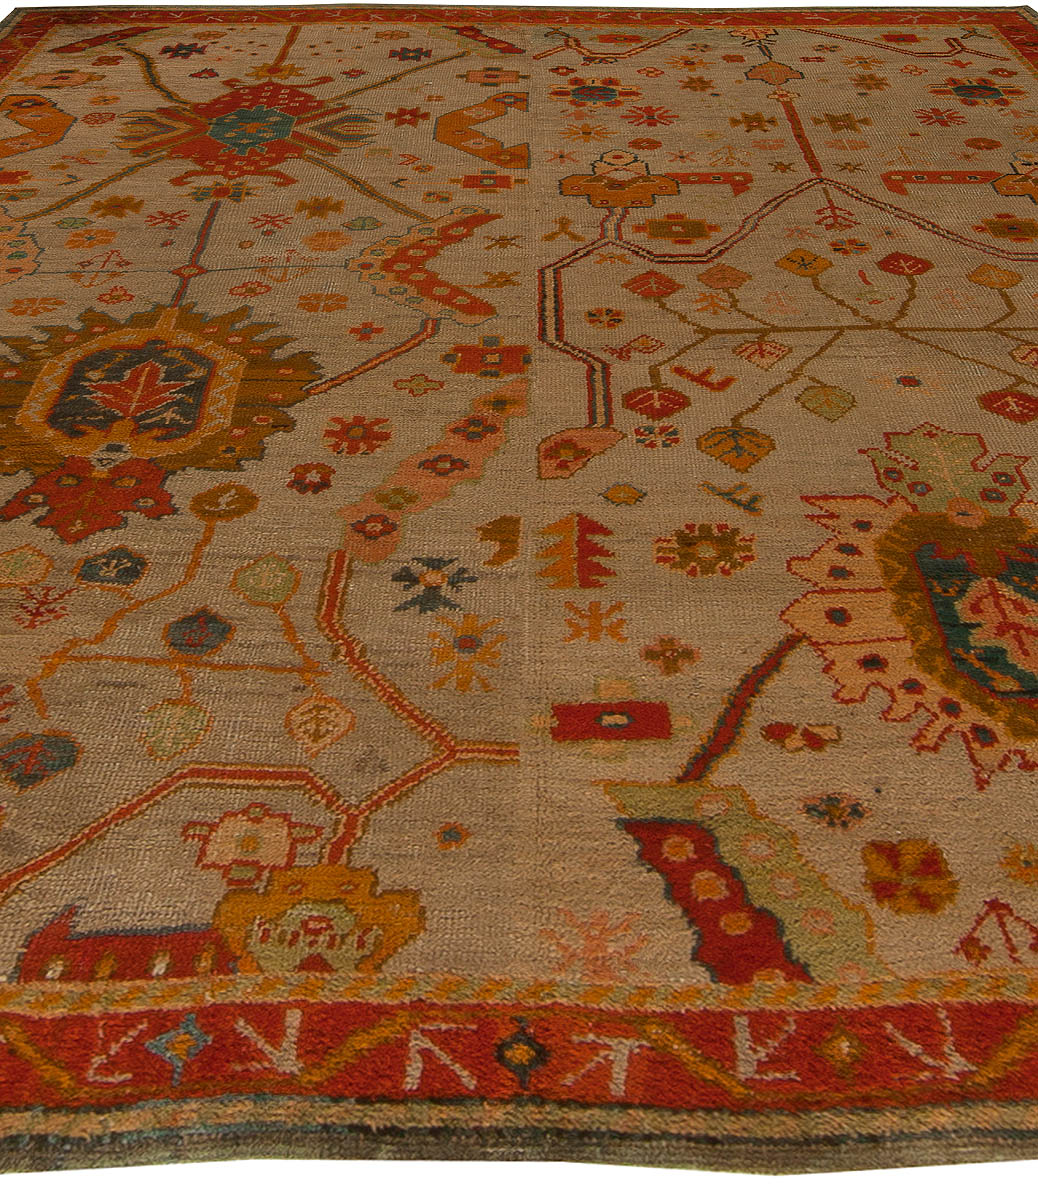 19th Century Turkish Oushak Botanic Beige Orange Handmade Wool Rug (Size Adjusted) BB5449